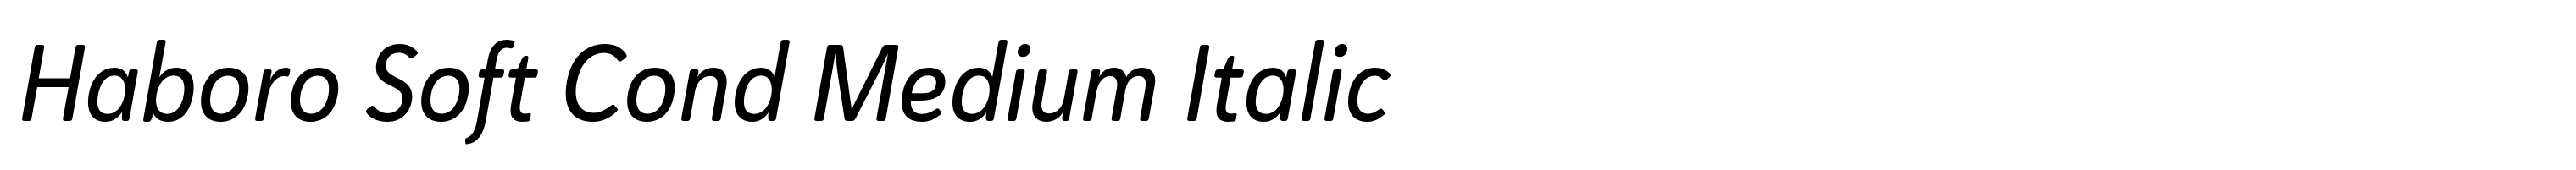 Haboro Soft Cond Medium Italic